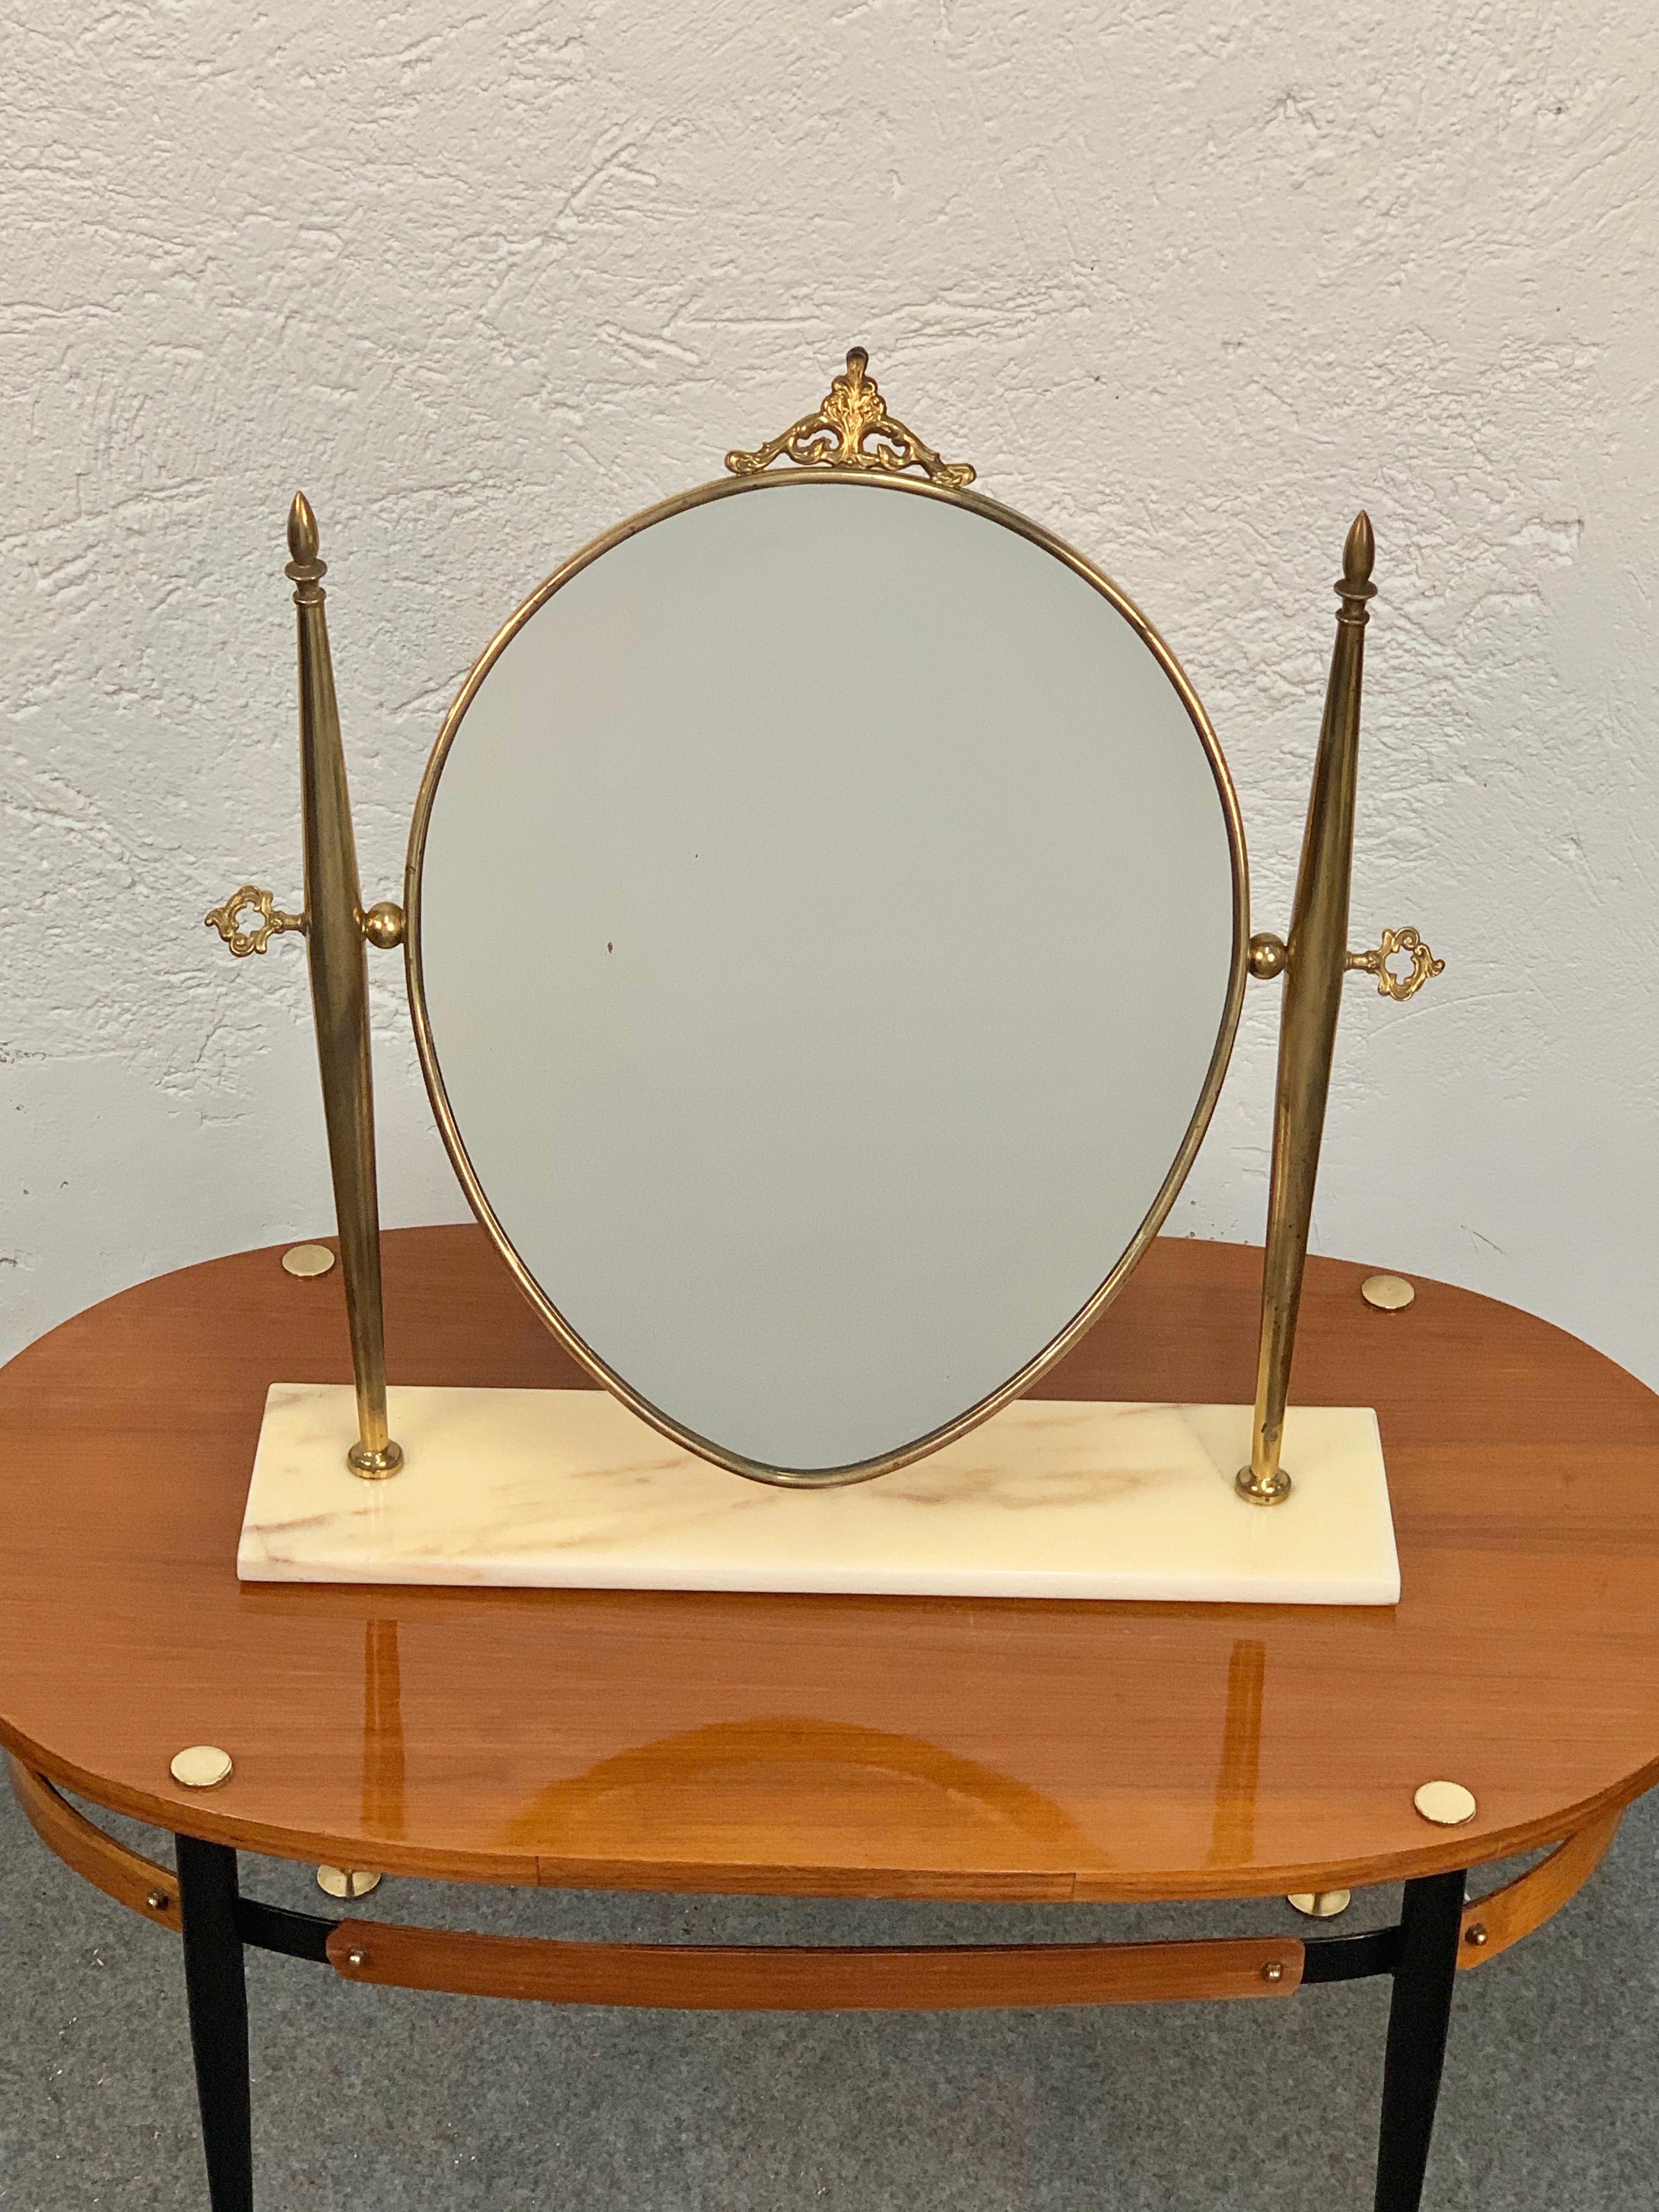 Wunderschöner Tischspiegel aus Messing mit verstellbarem Marmorsockel für den Waschtisch.

Dieser elegante Tisch oder Schminkspiegel aus der Mitte des Jahrhunderts wurde in den 1950er Jahren in Italien entworfen und hergestellt. 

Der Spiegel